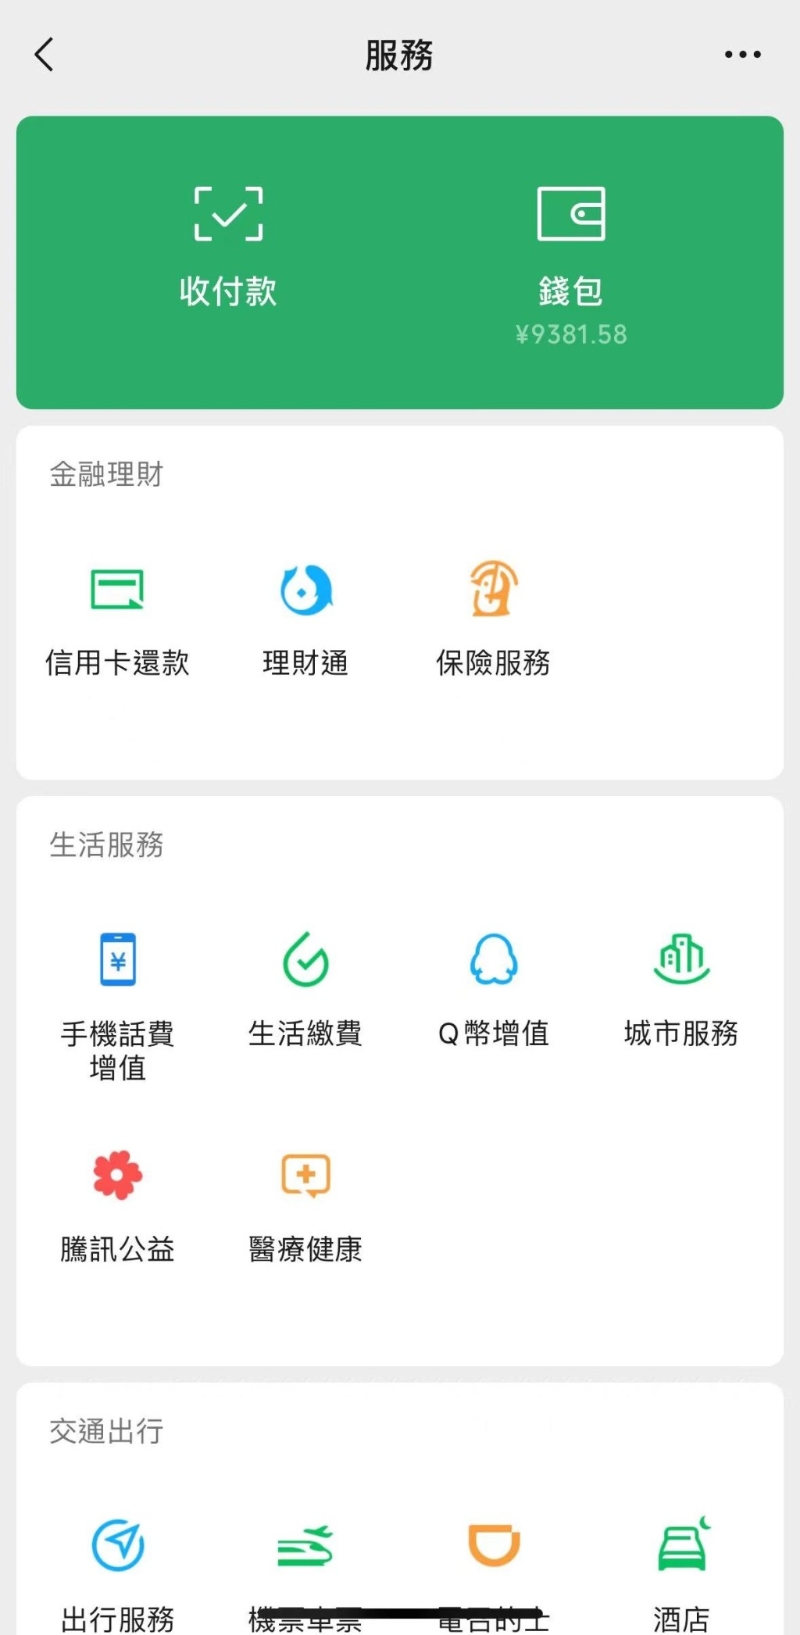 如余额显示“HK$”，代表用户正在使用港币钱包（即WeChat Pay HK）